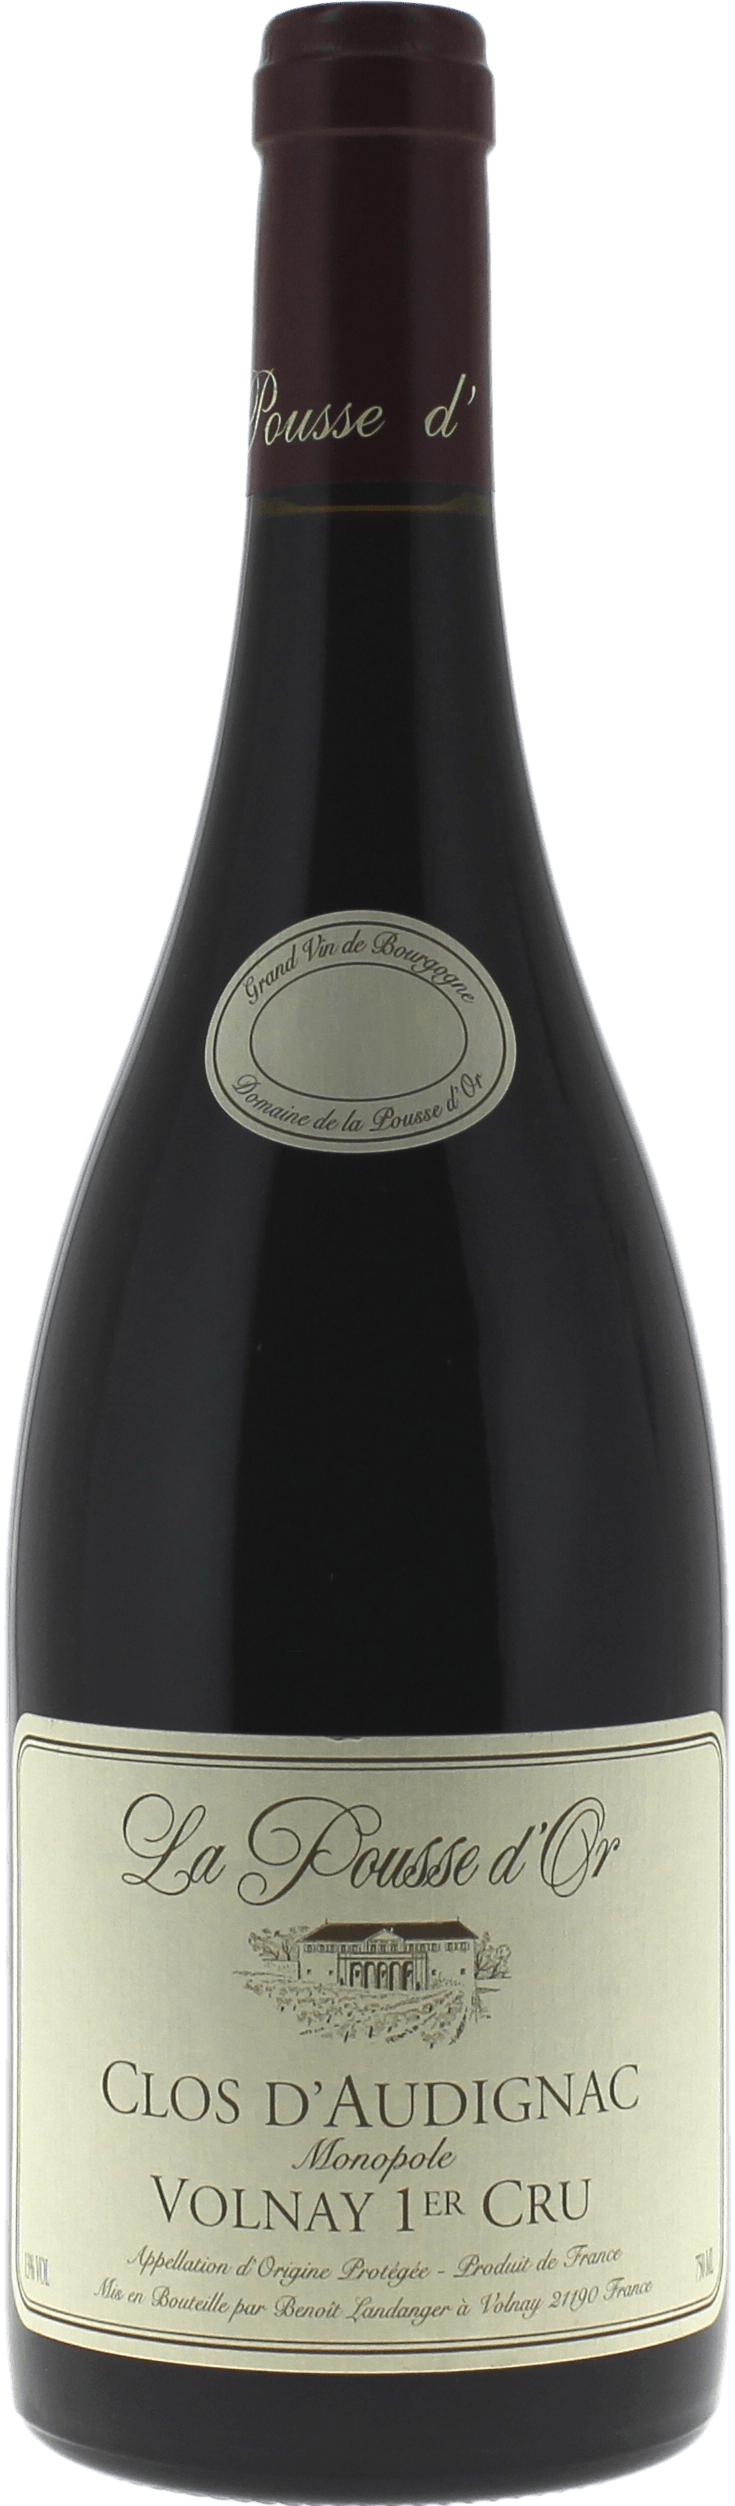 Volnay 1er cru clos d'audignac 2016 Domaine POUSSE D'OR, Bourgogne rouge